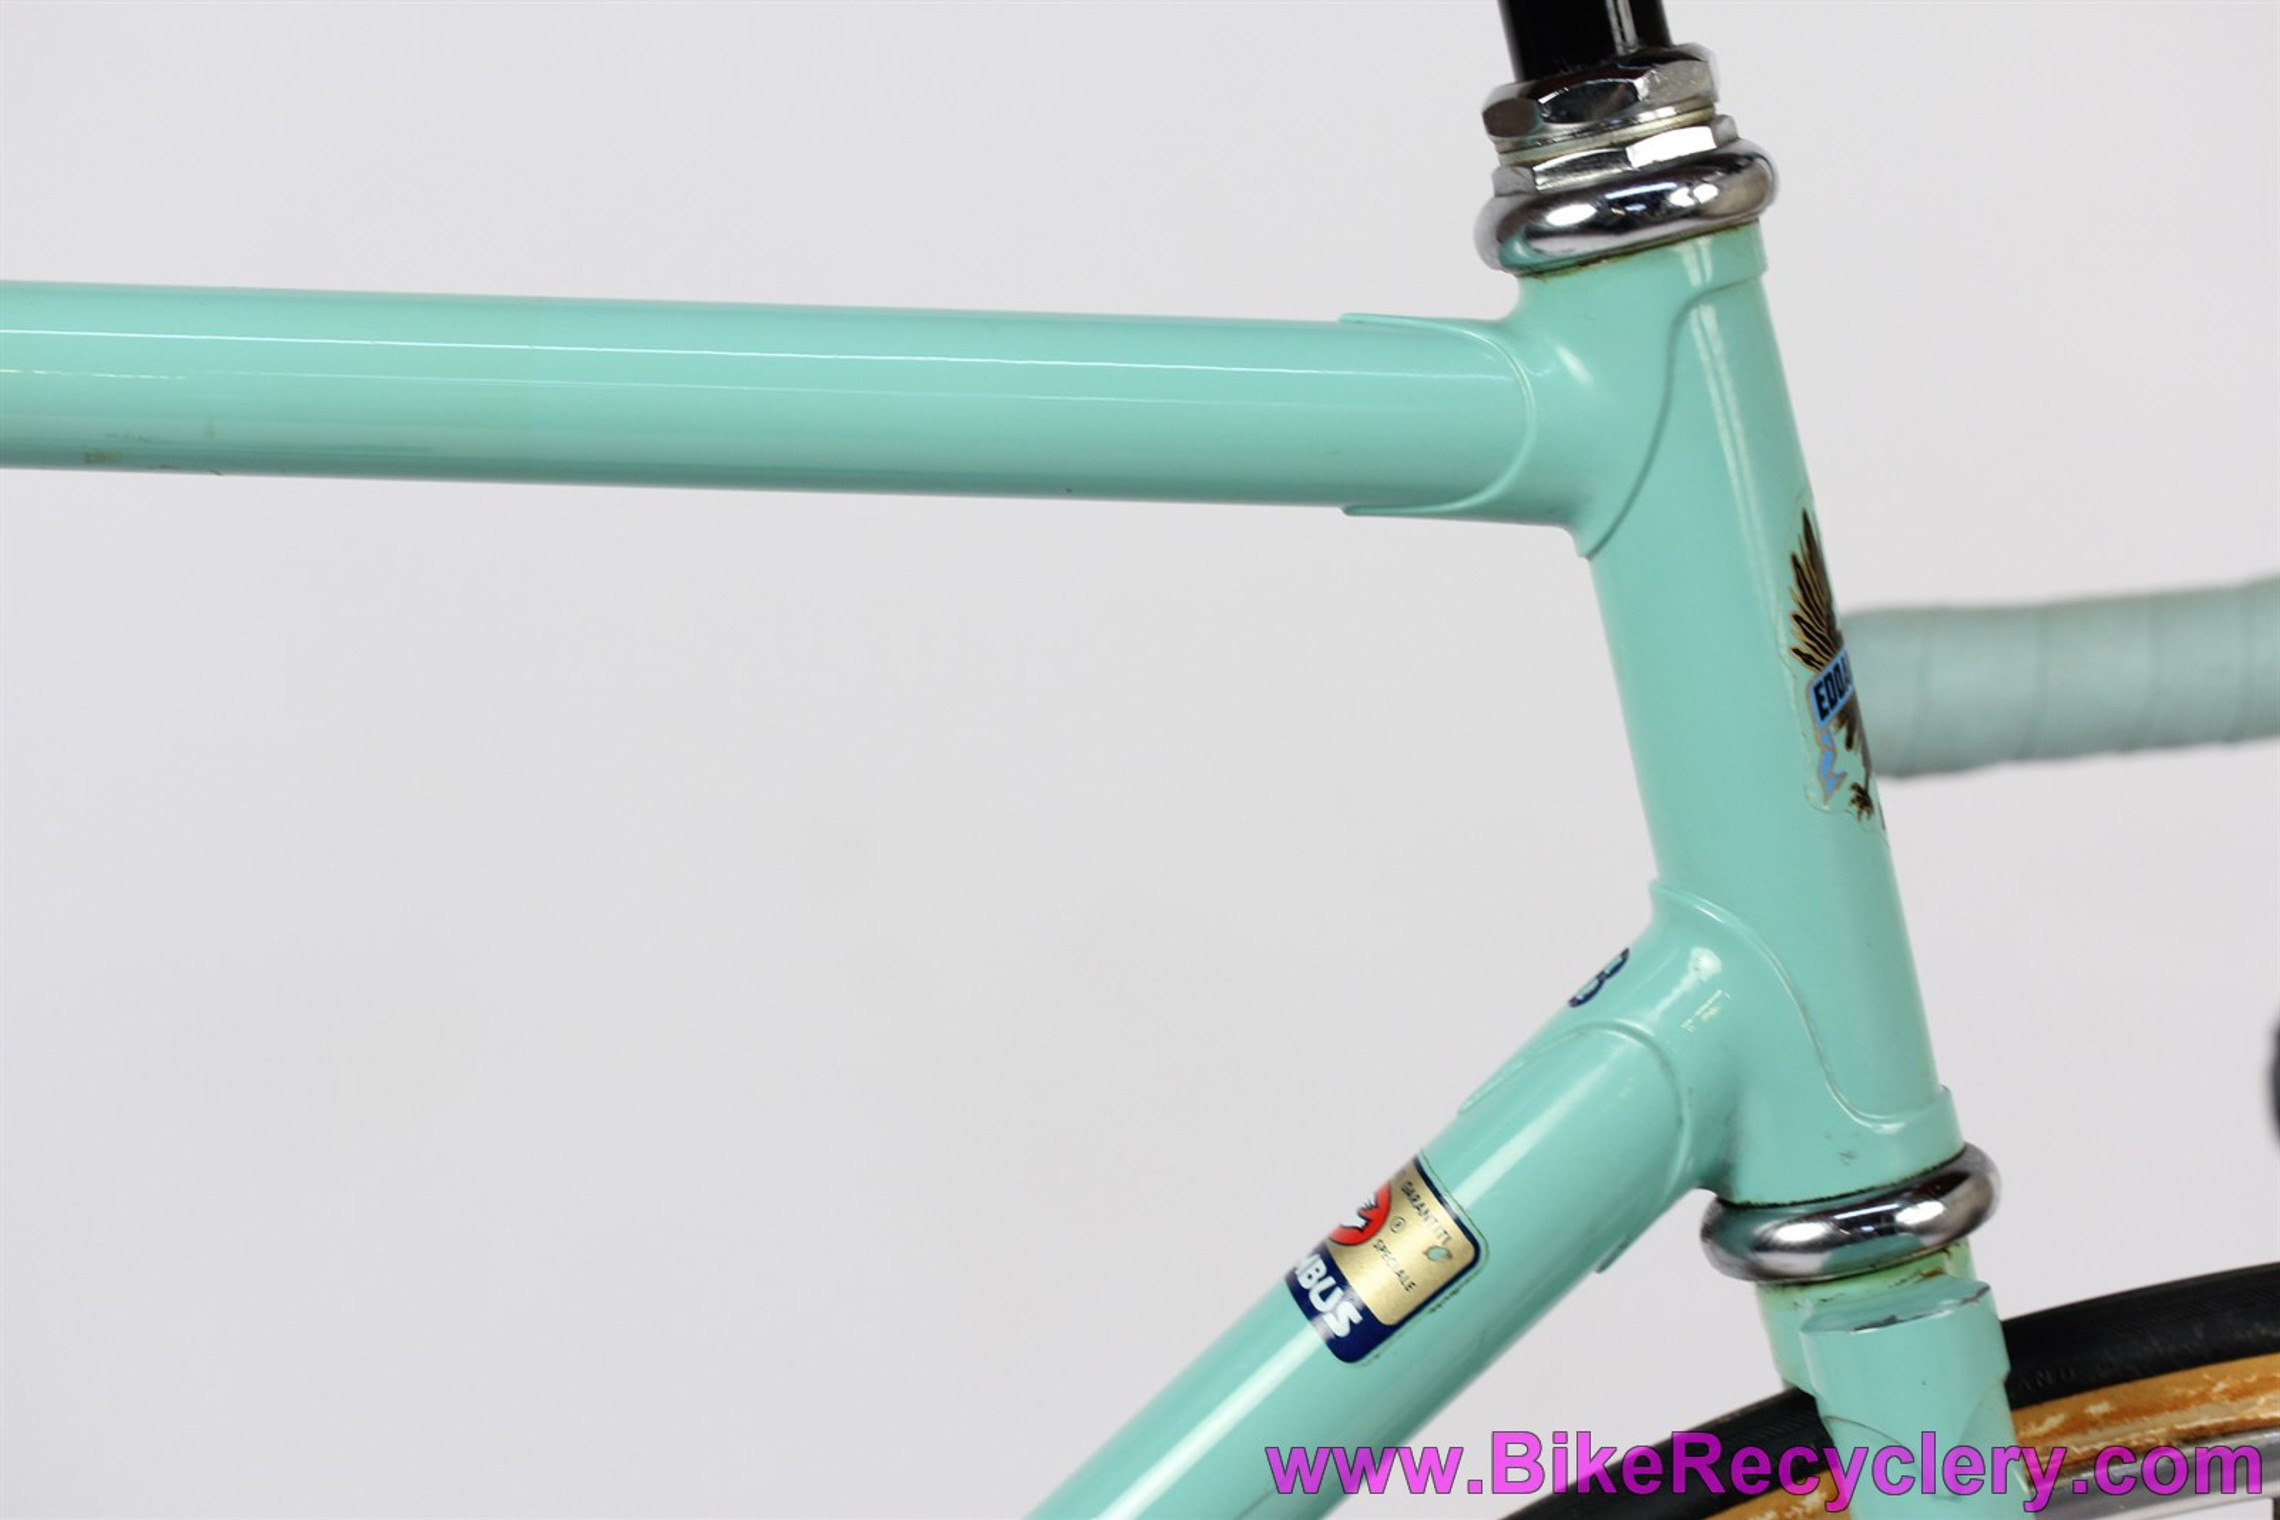 1981 Bianchi Super Pista Track Bike: 54cm - Celeste - Columbus SP -  Pantograph Campagnolo Record - Ofmega Mistral - Fiamme - Original Paint (EXC)